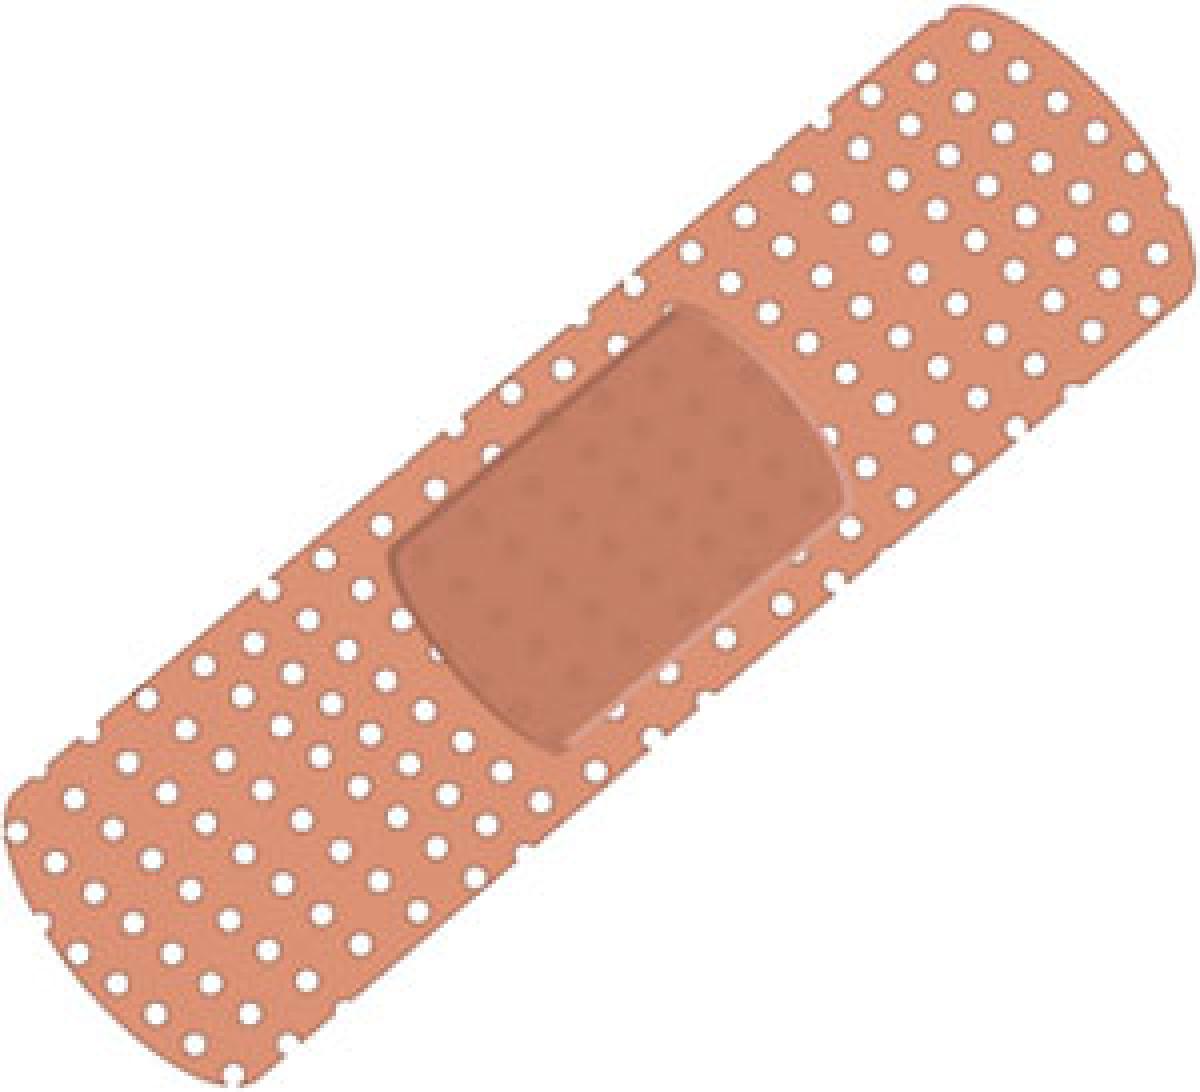 New bandage senses temperature, delivers medicine